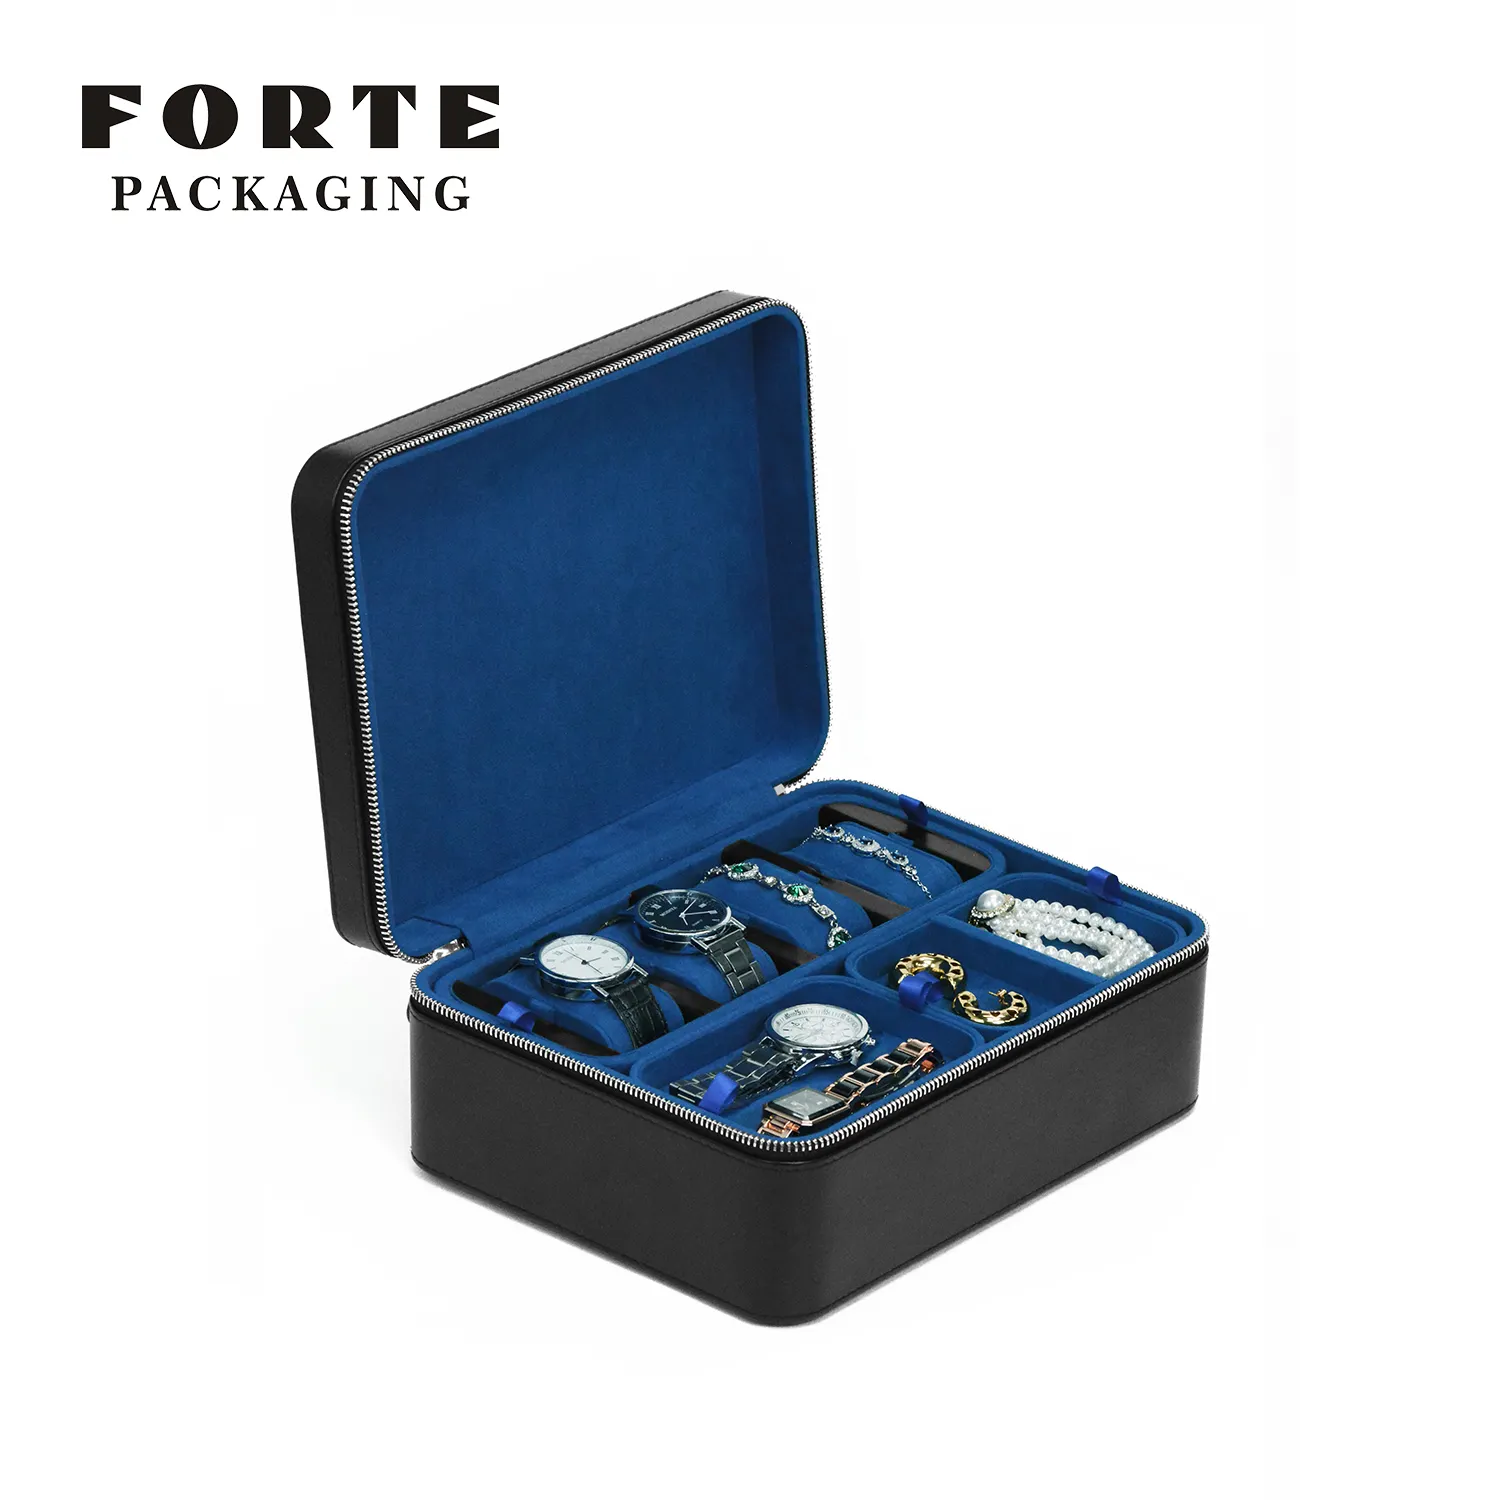 Forte - Estojo de joias de luxo para armazenamento de joias, material de couro PU de alta qualidade, inserção de veludo em duas camadas, azul e laranja